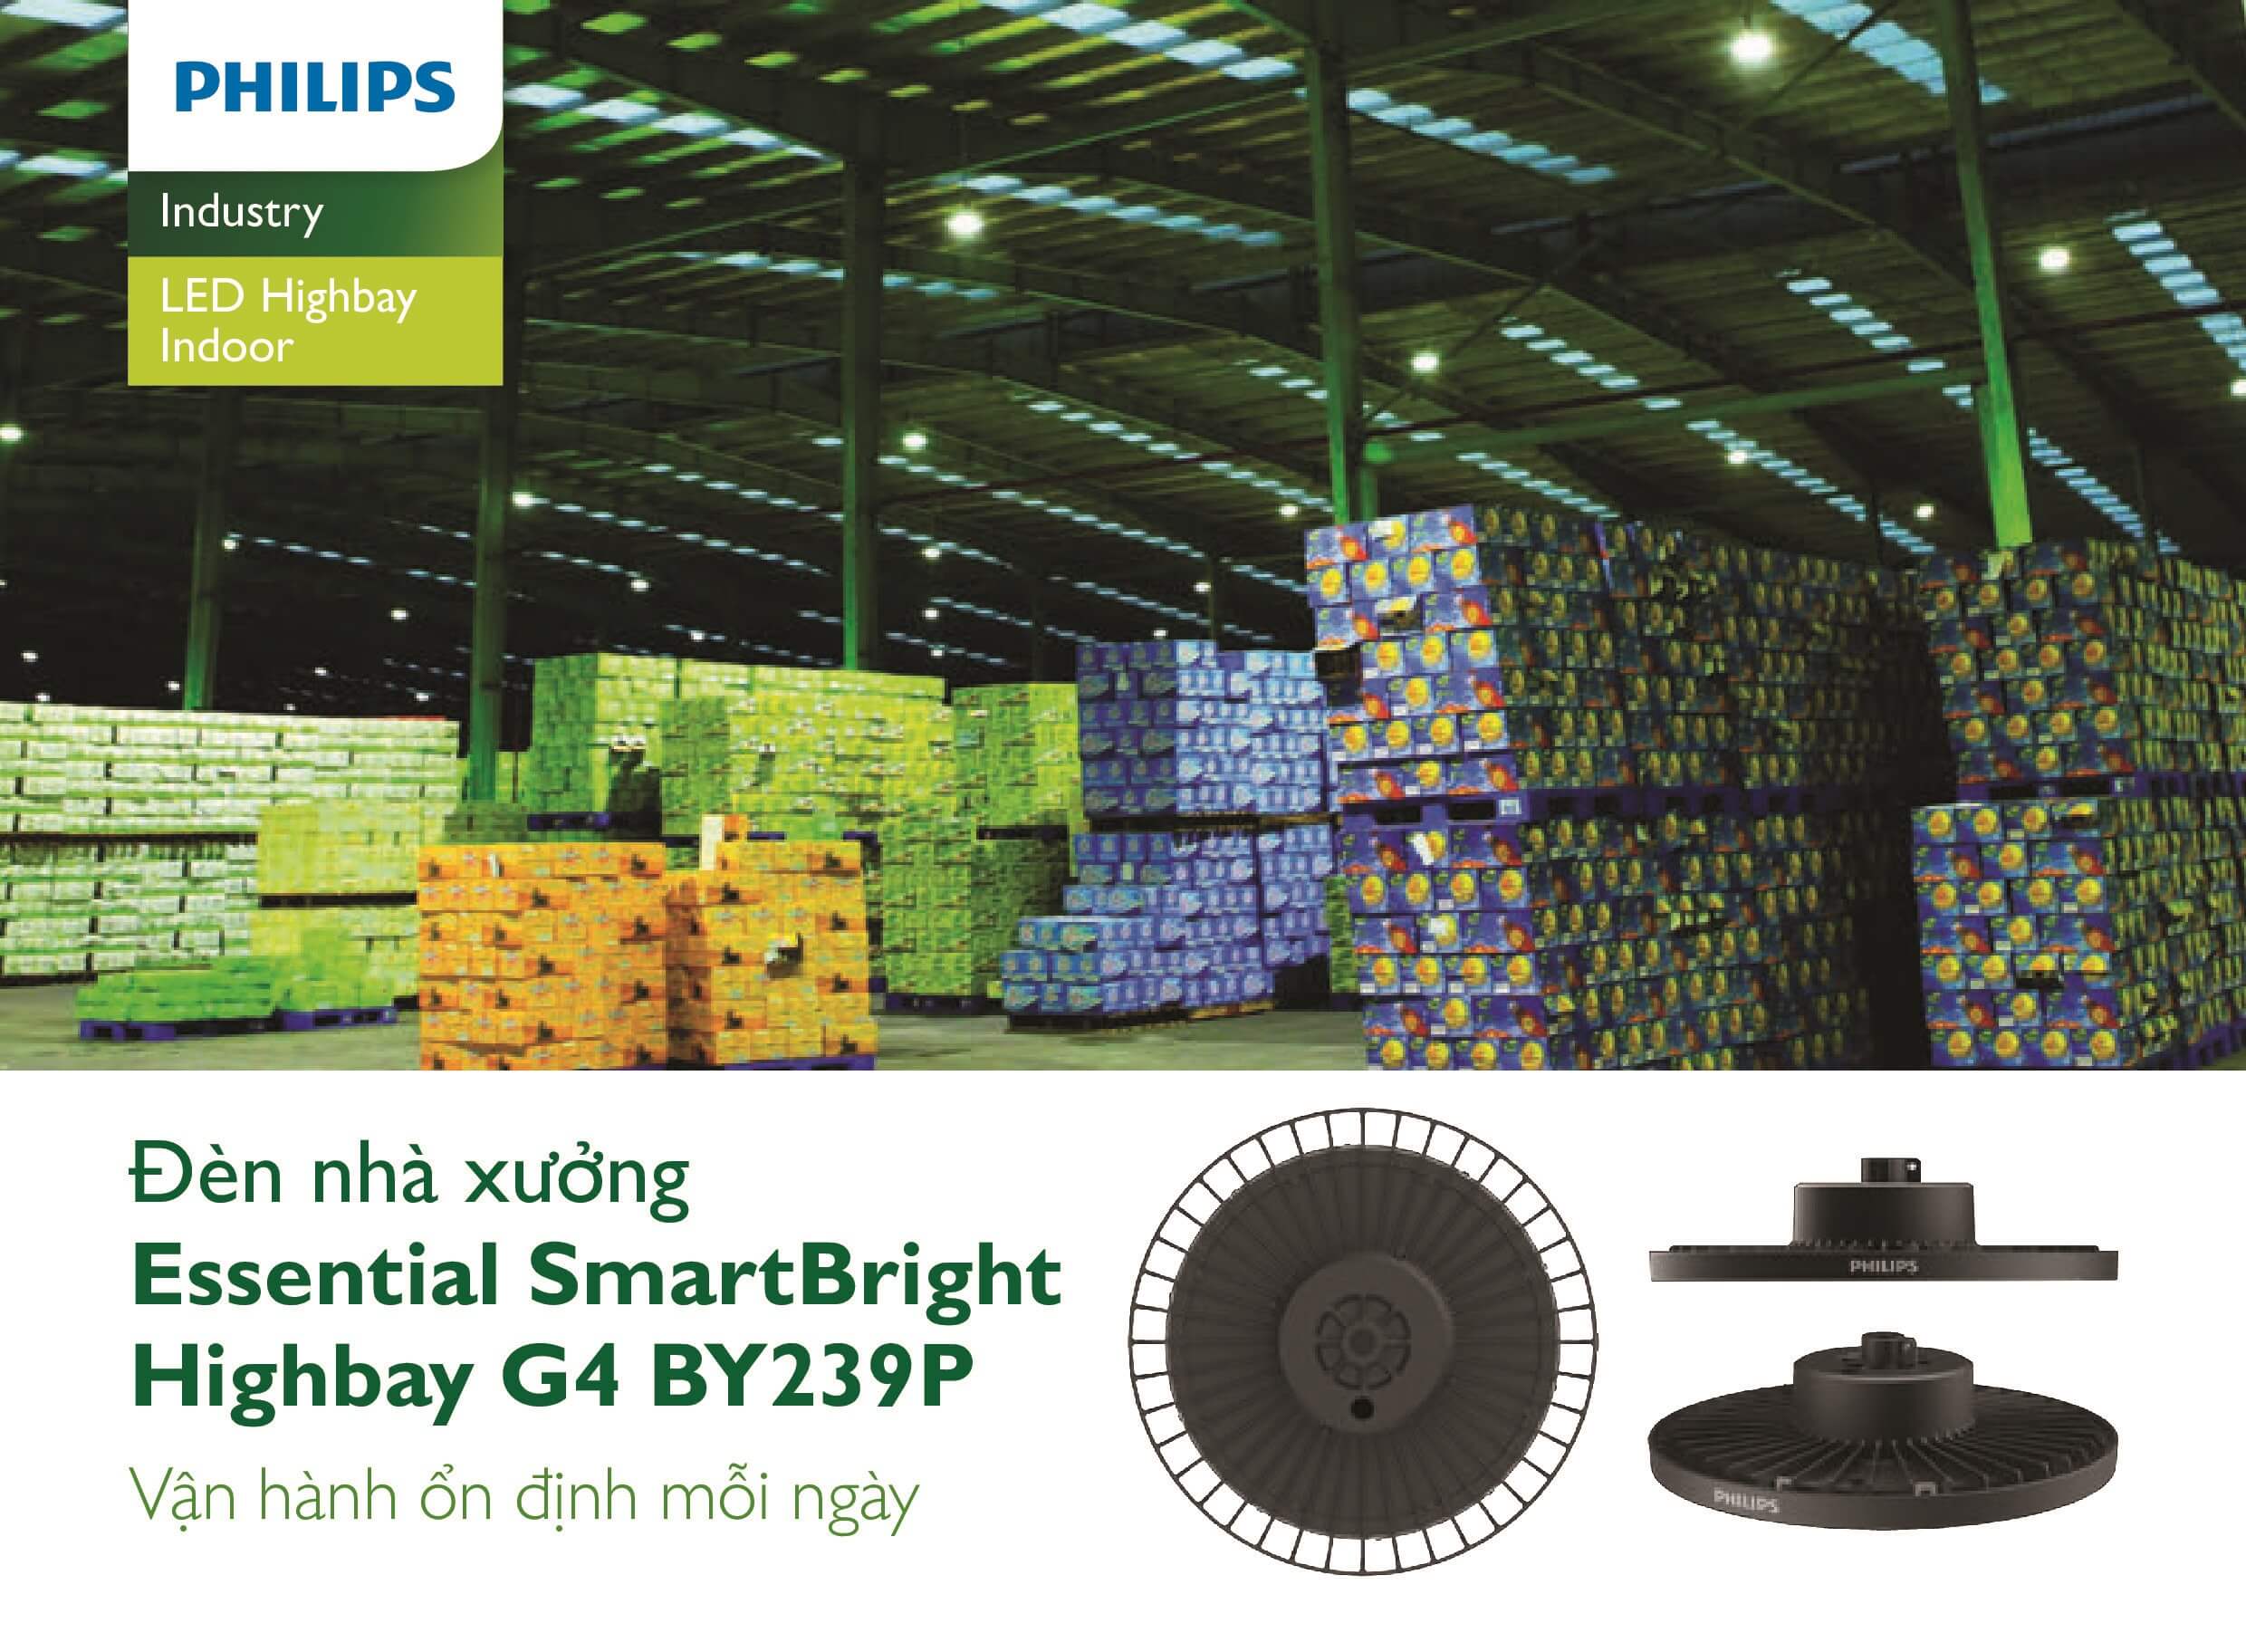 Đèn Higbay LED Philips là giải pháp chiếu sáng hiệu quả cho các nhà xưởng, kho lạnh, trung tâm thương mại. Với ánh sáng rực rỡ và độ sáng tối đa, đèn Higbay LED Philips mang lại không gian làm việc an toàn, chuyên nghiệp và tiết kiệm chi phí. Hãy xem hình ảnh để khám phá sự khác biệt mà đèn Higbay LED Philips mang lại.